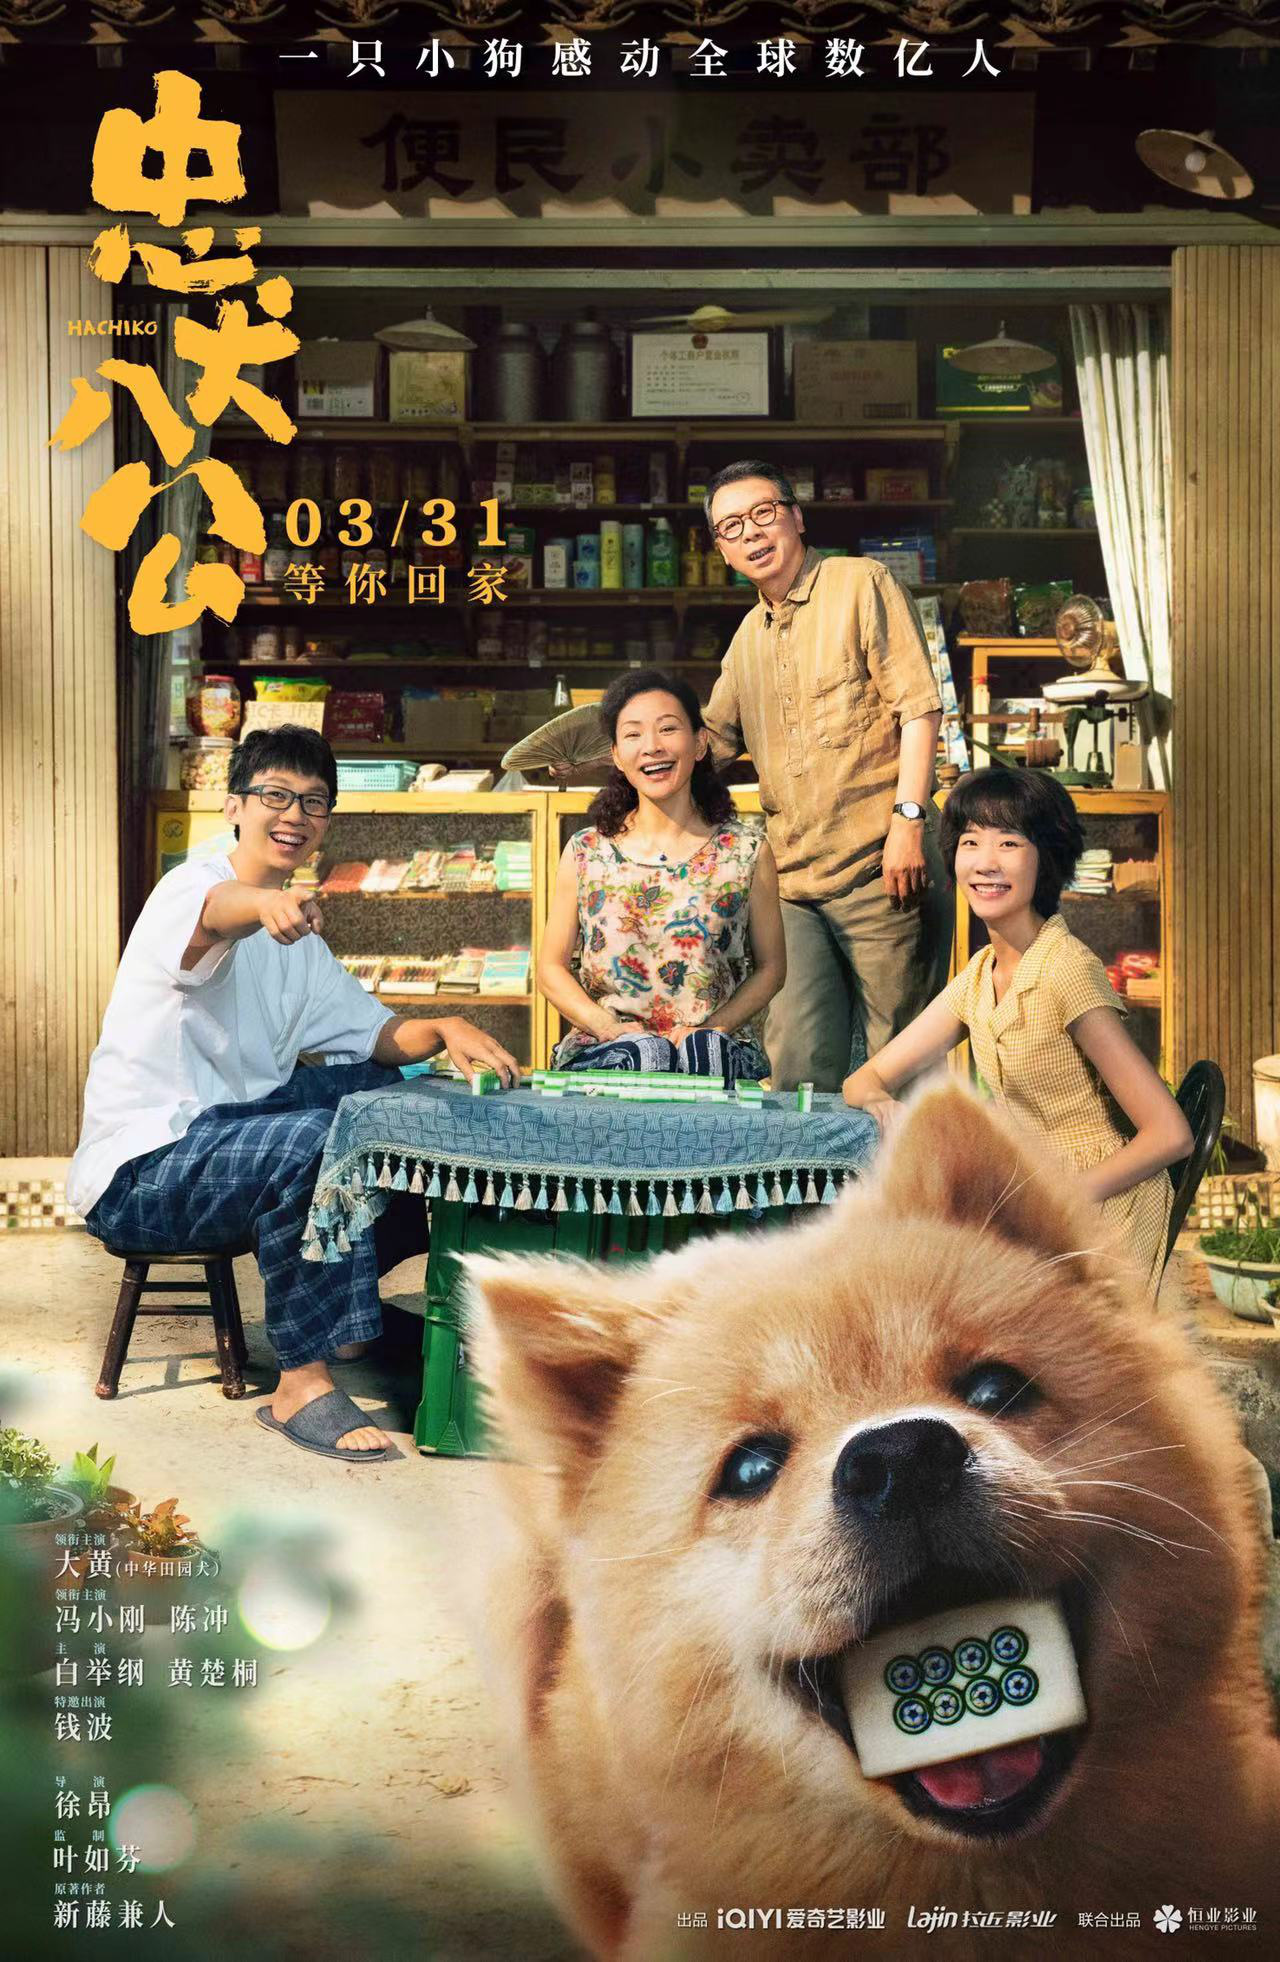 电影《忠犬八公》定档3.31 经典故事注入中国味儿